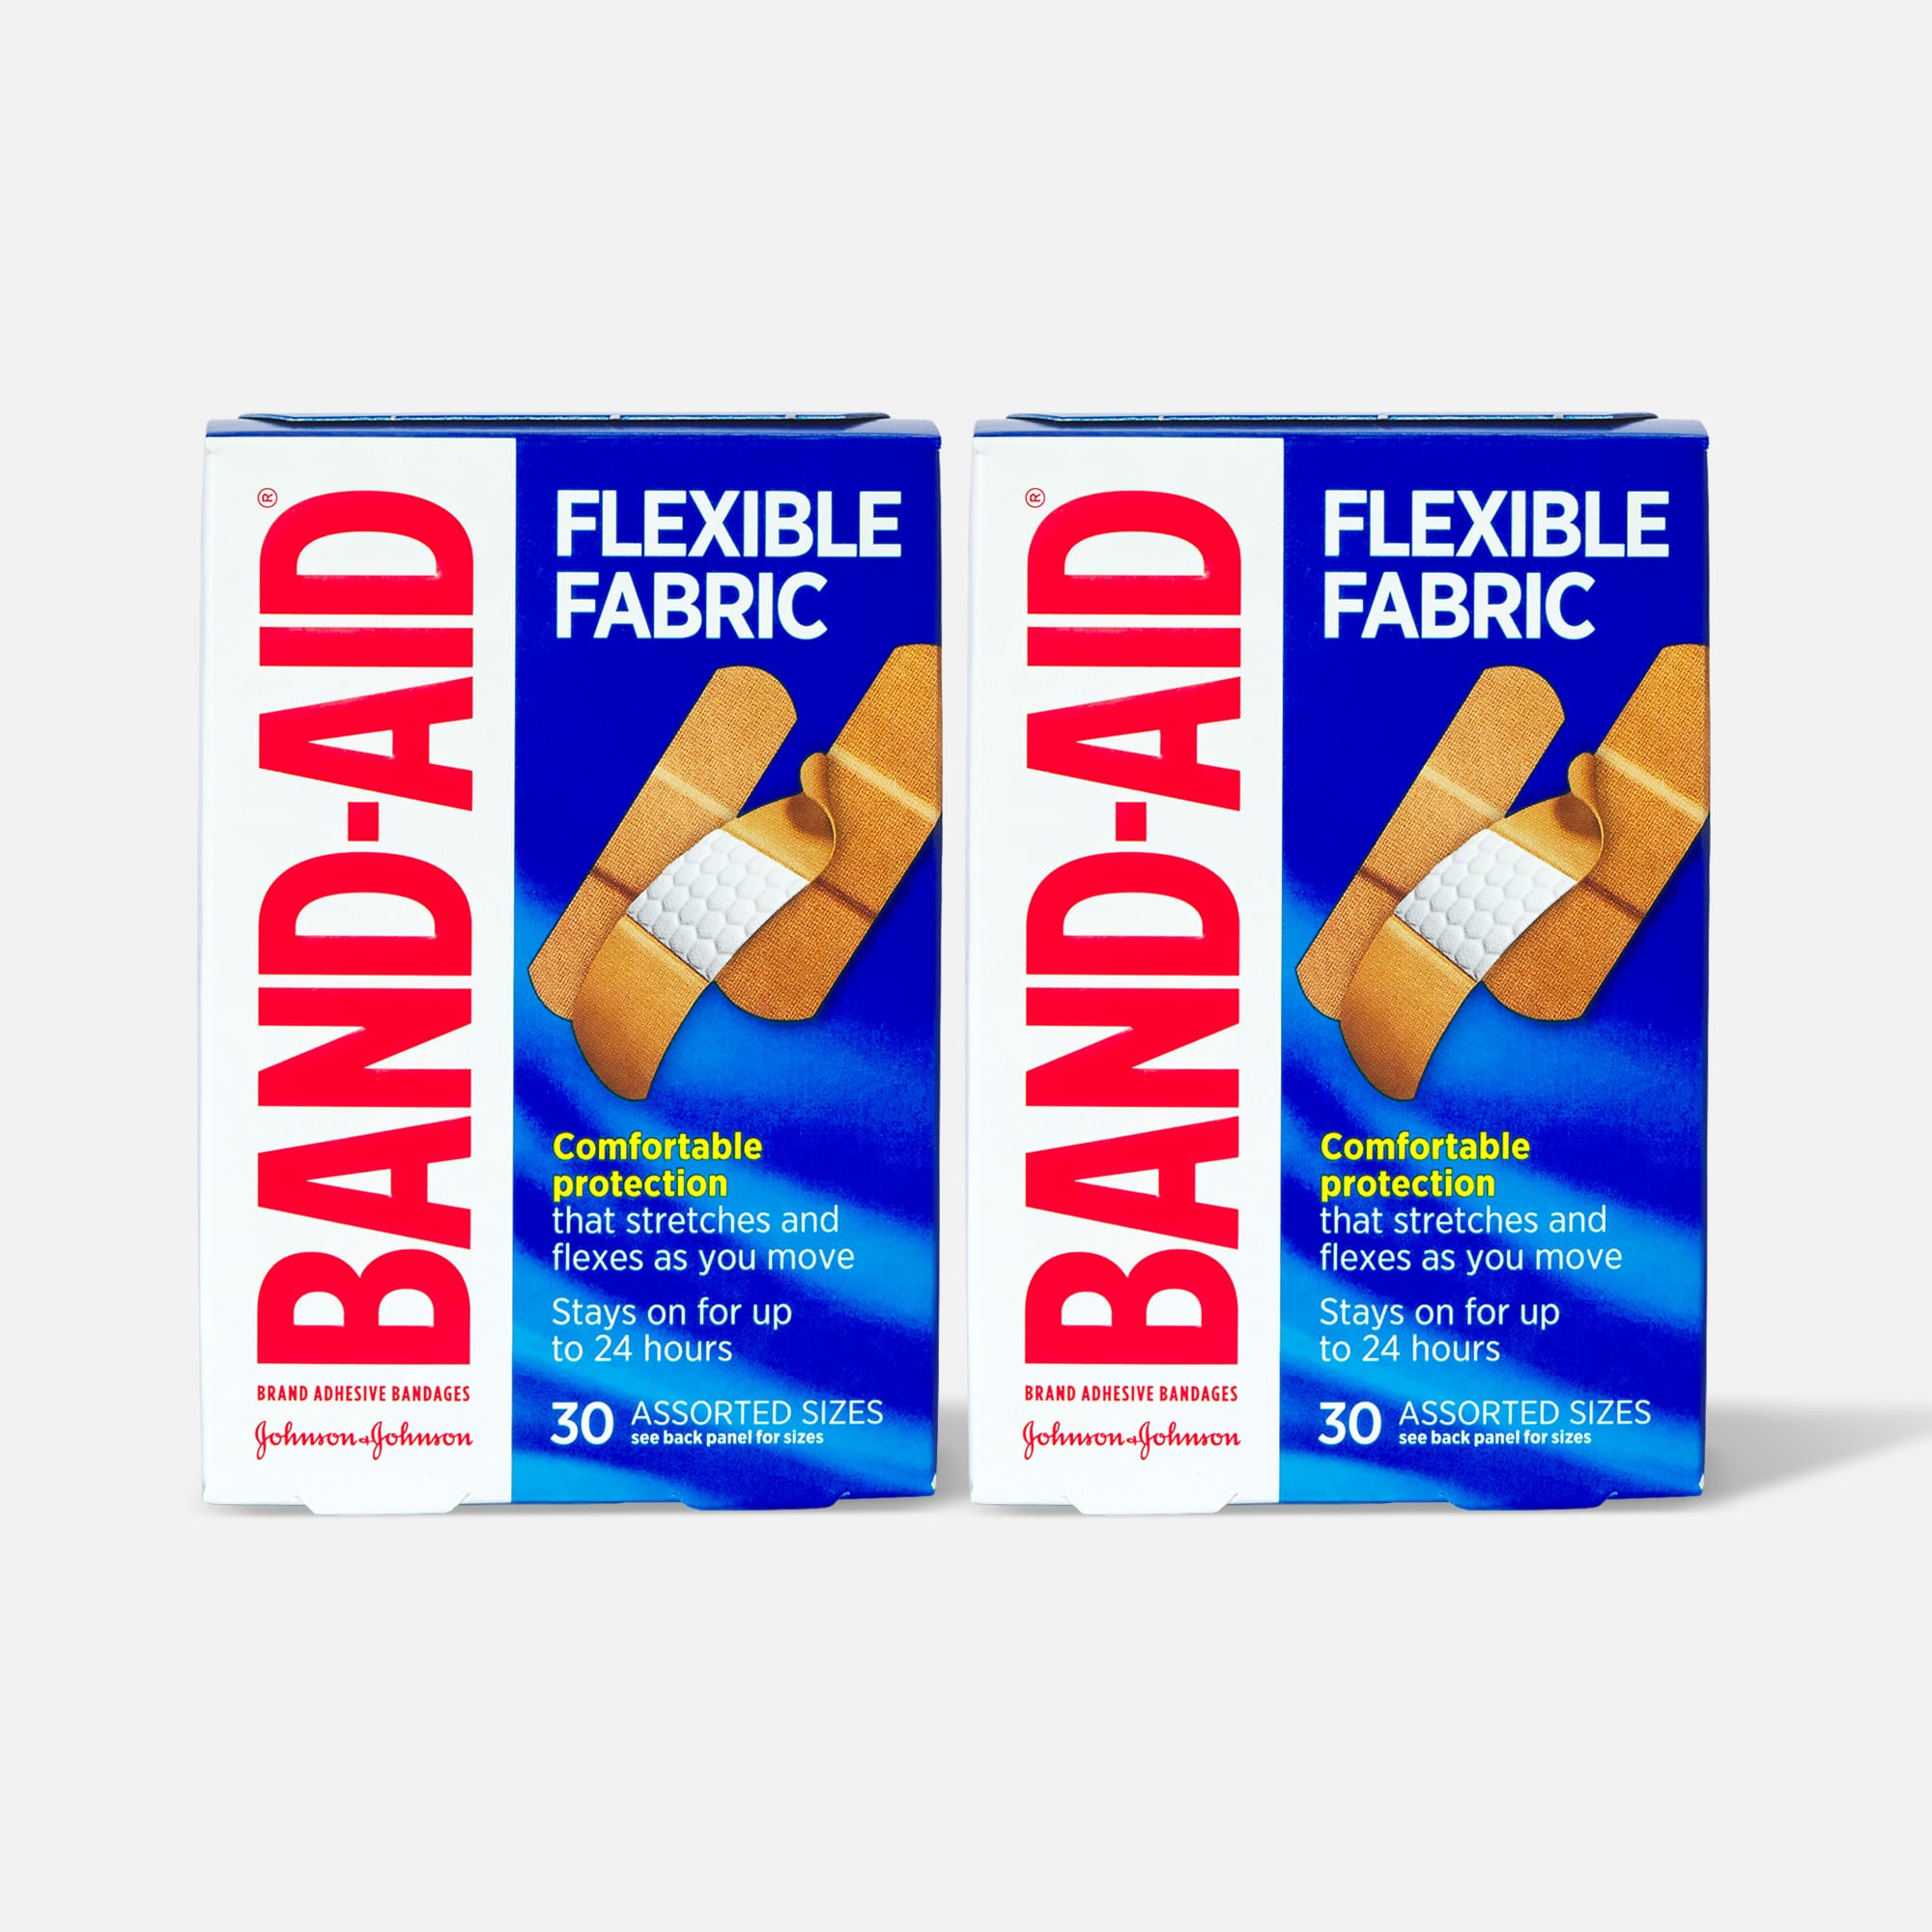 HSA Eligible  Band-Aid Flexible Fabric Adhesive Bandages